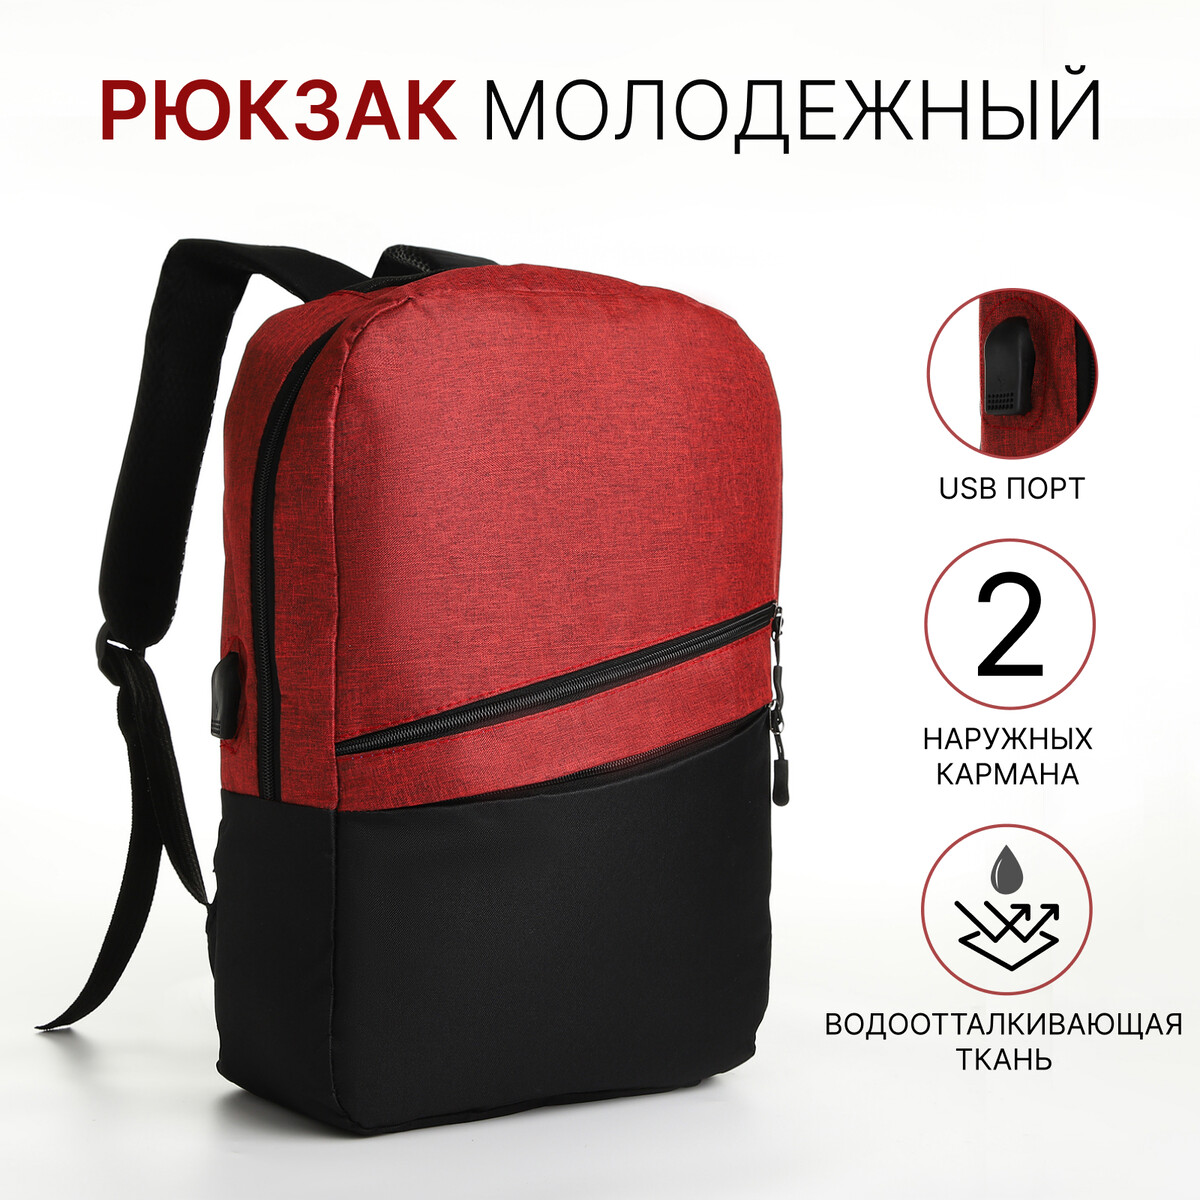 Рюкзак городской с usb из текстиля на молнии, 2 кармана, цвет черный/красный рюкзак wenger next crango 611980 16 красный 27 л